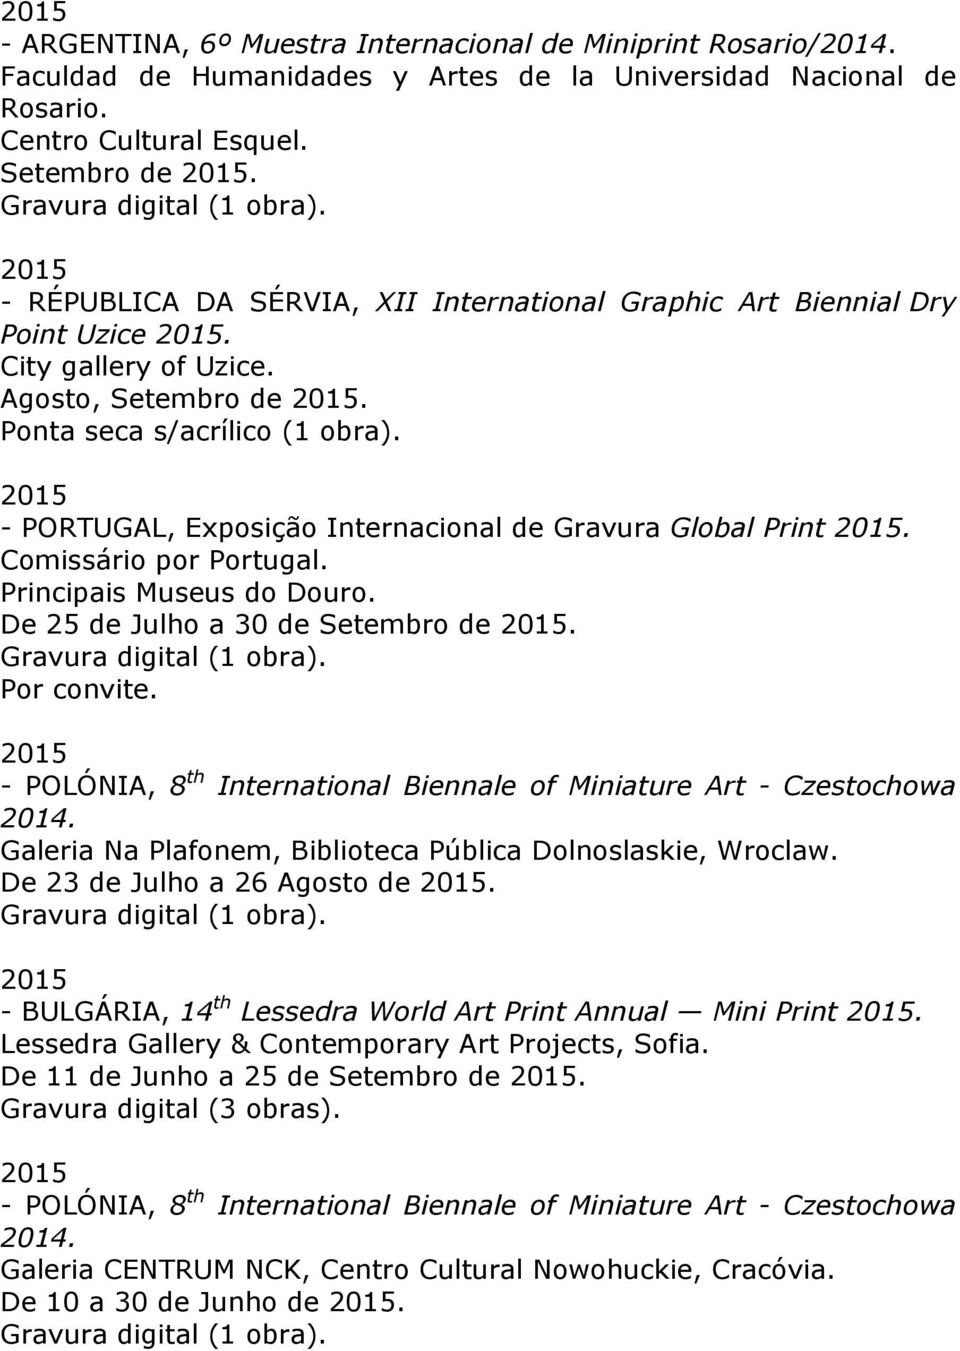 2015 - PORTUGAL, Exposição Internacional de Gravura Global Print 2015. Comissário por Portugal. Principais Museus do Douro. De 25 de Julho a 30 de Setembro de 2015. Por convite.